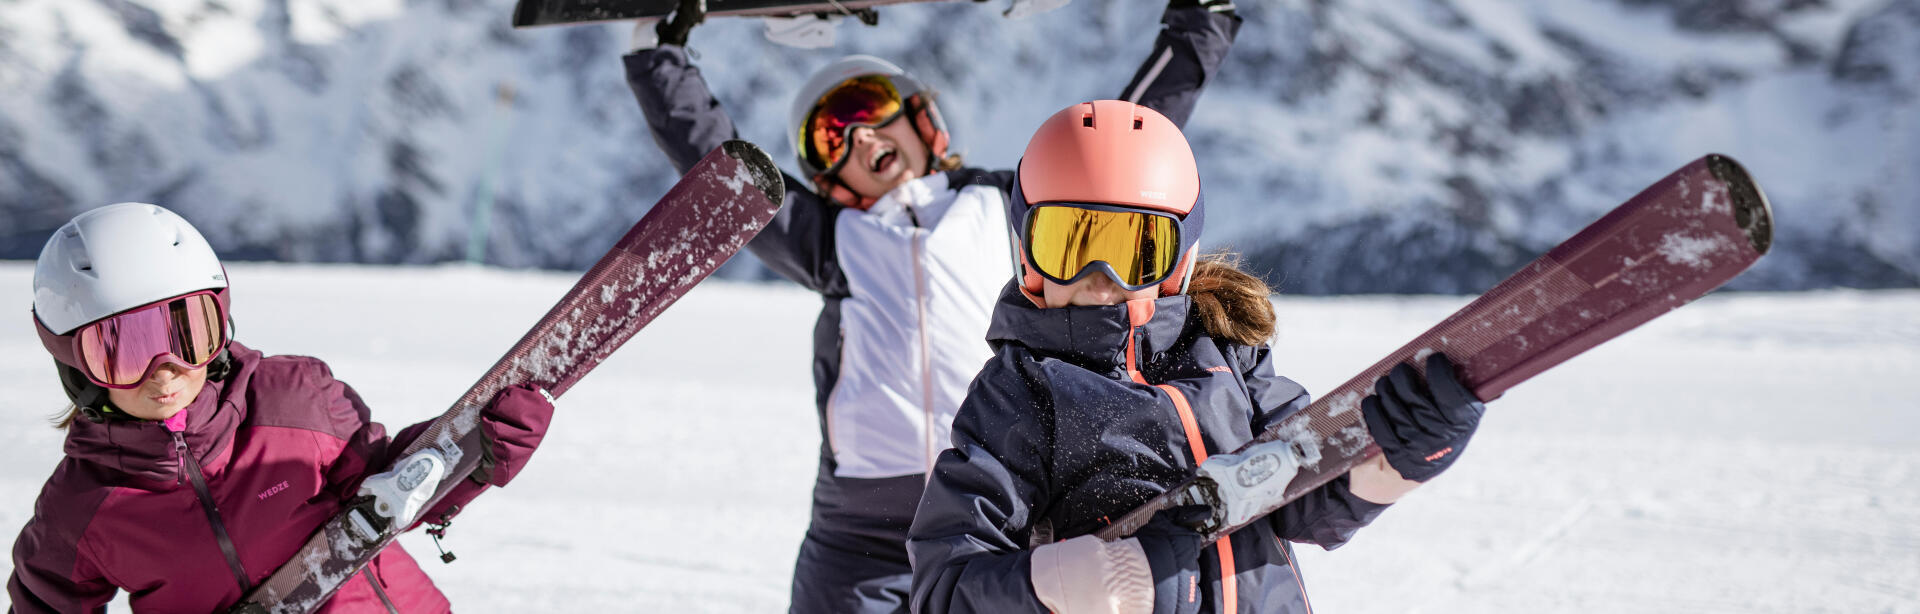 Come vestire bene un bambino per lo sci?